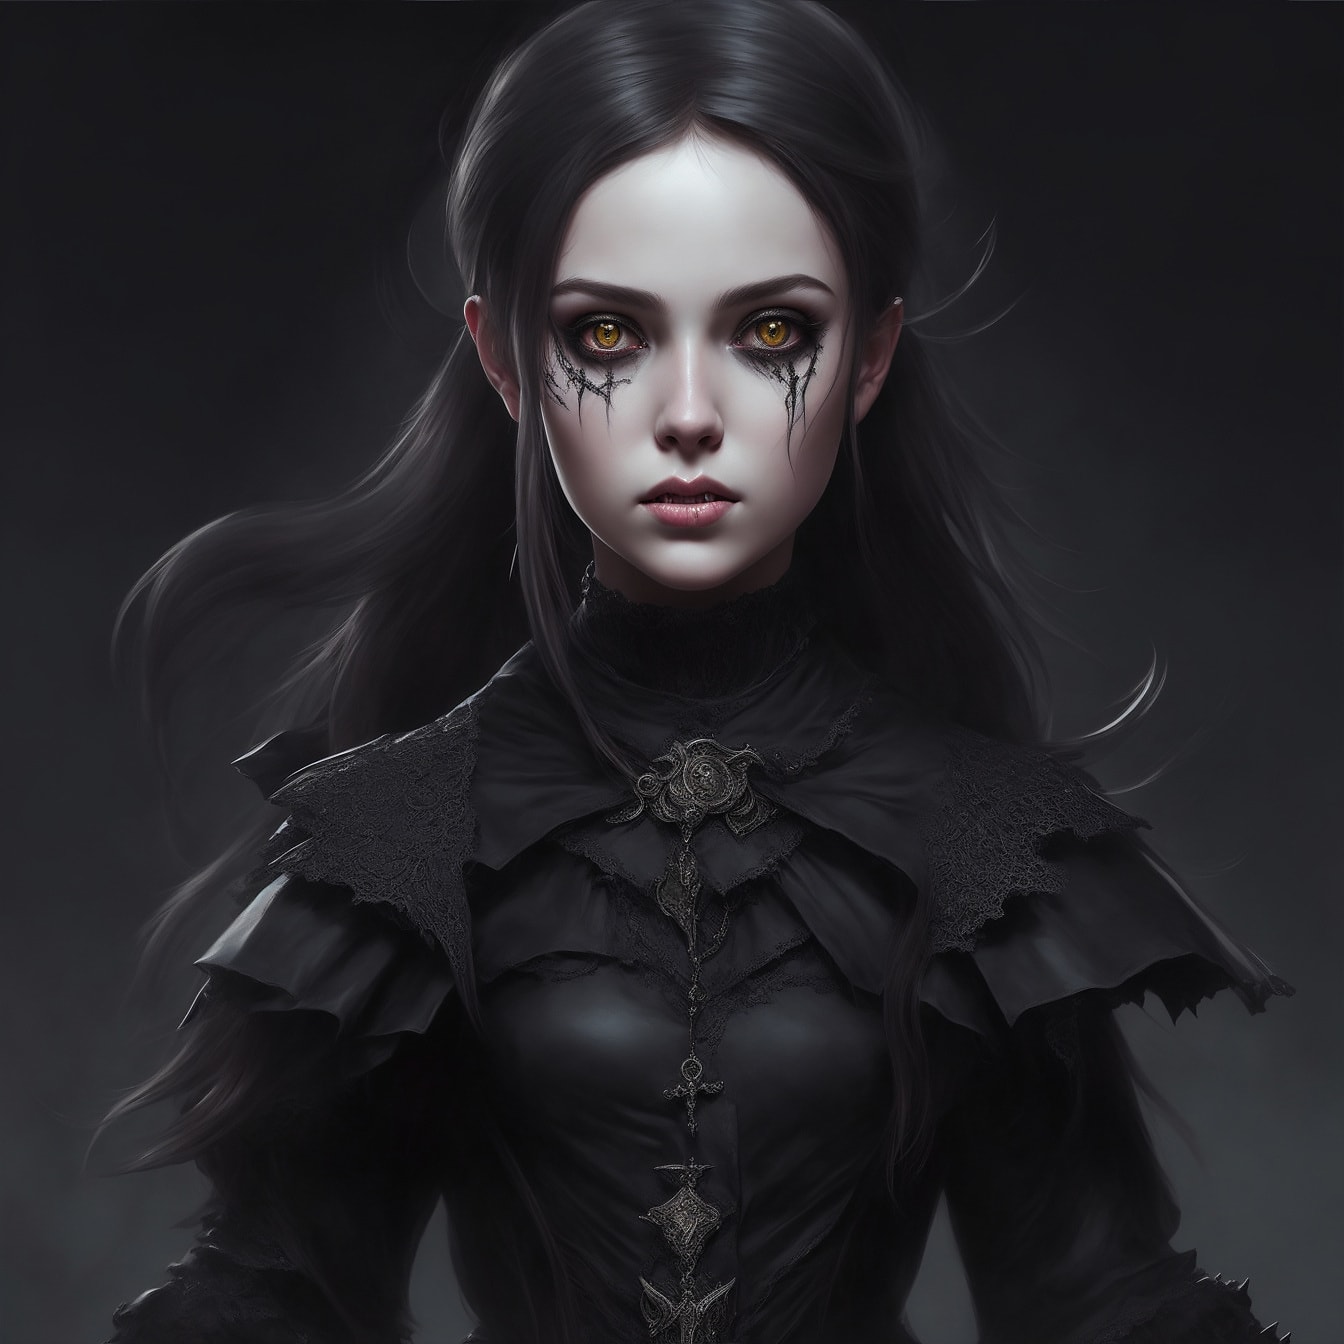 Wunderschöner Gothic Girl Vampir Charakter